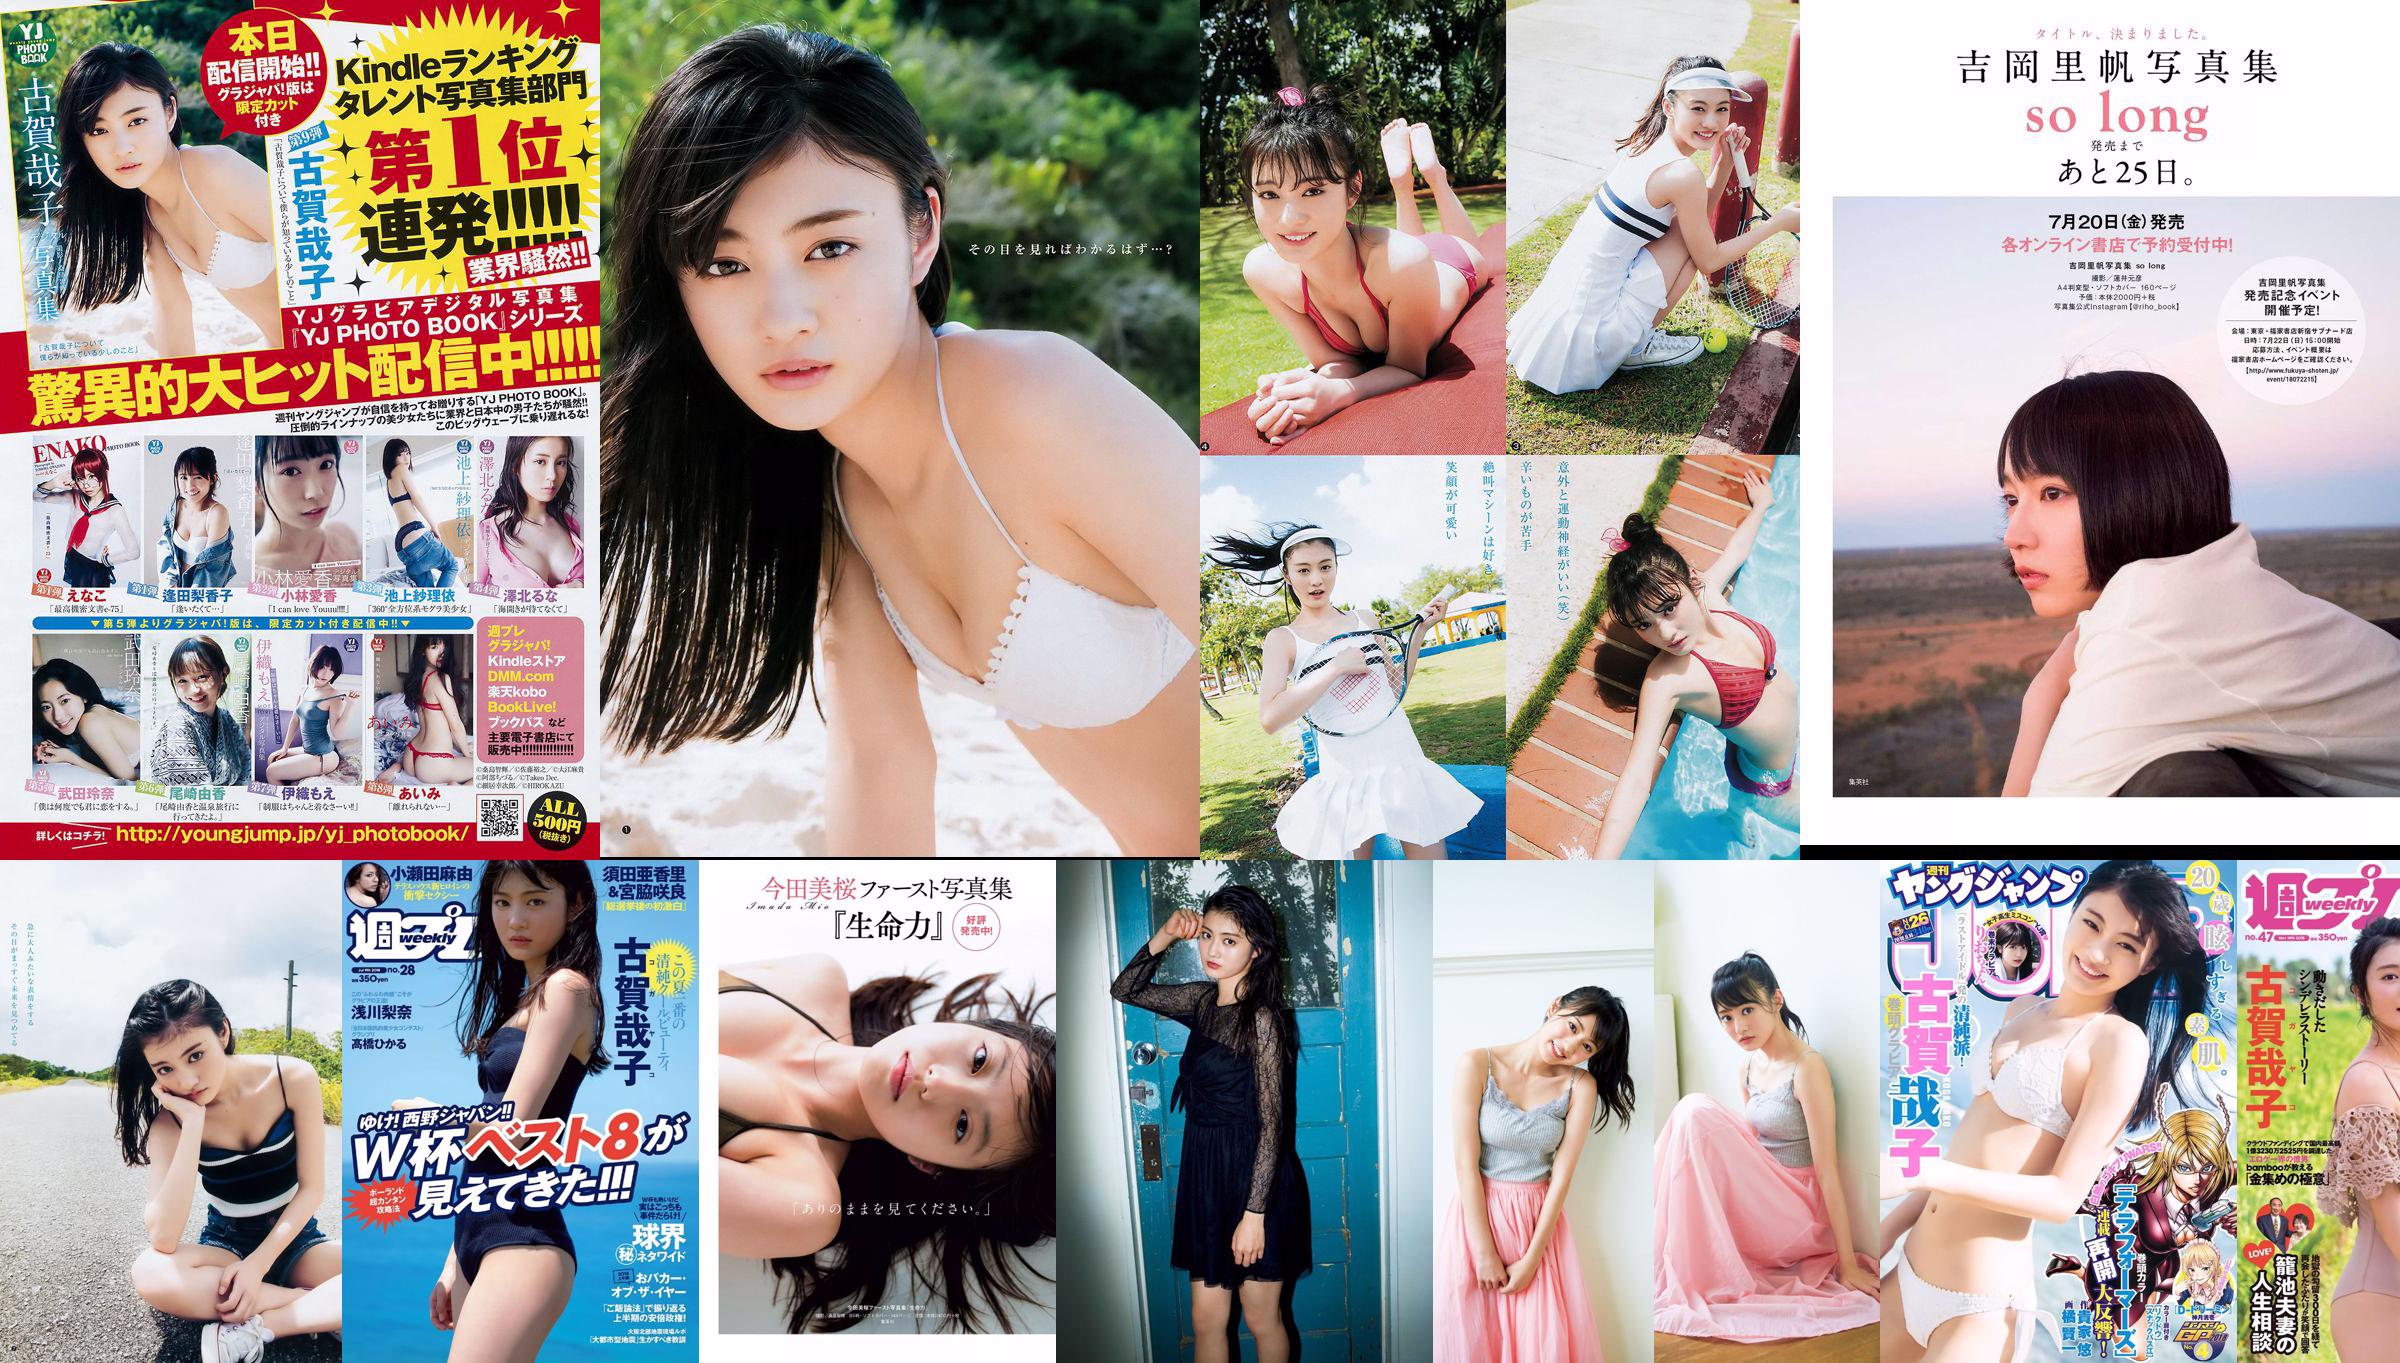 Yako Koga Yukie Kawamura Hitomi Kaji Anna Masuda Ruka Kurata Miyabi Kojima [Weekly Playboy] 2018 No.47 Photograph No.d64a68 Page 1